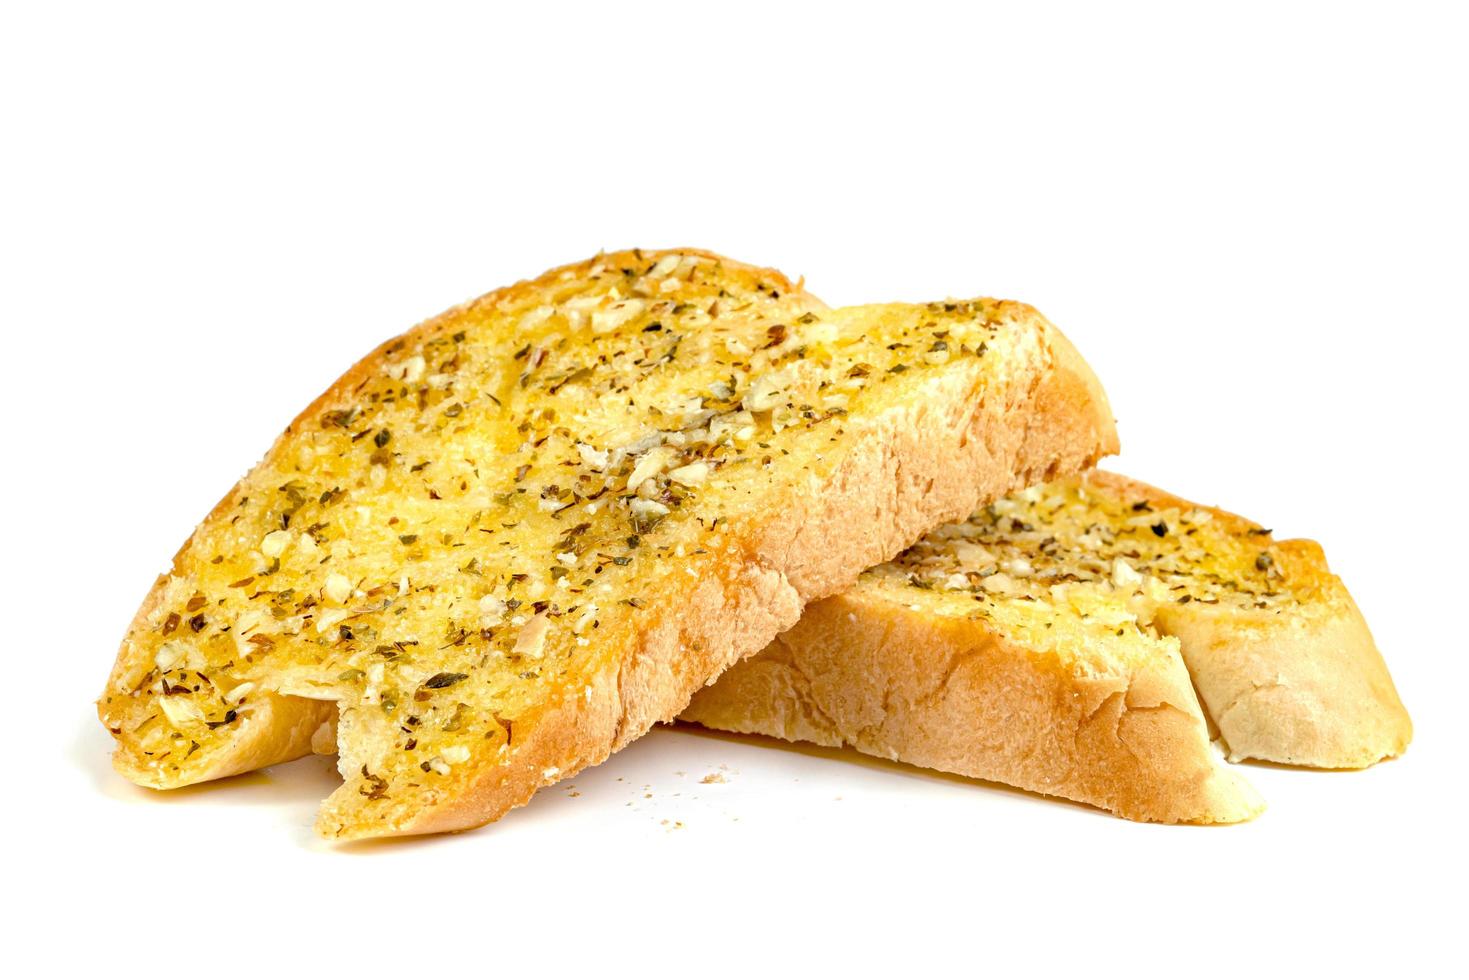 gebeten lookbrood met kaas geïsoleerd op een witte achtergrond foto